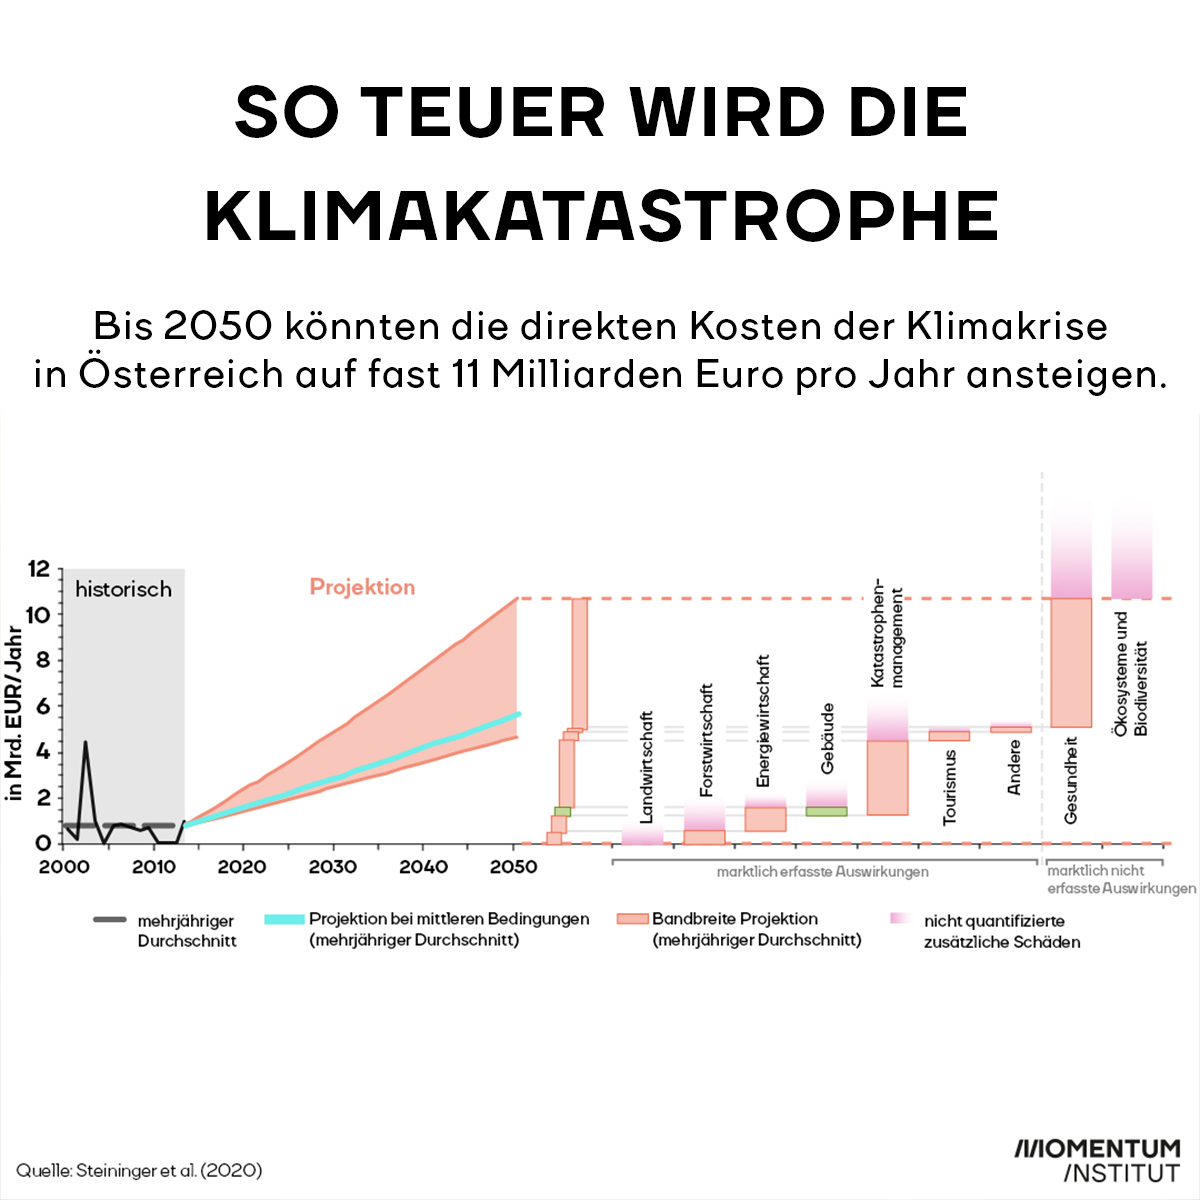 Die Klimakatastrophe wird 2050 bis zu 12 Milliarden Euro kosten in Österreich